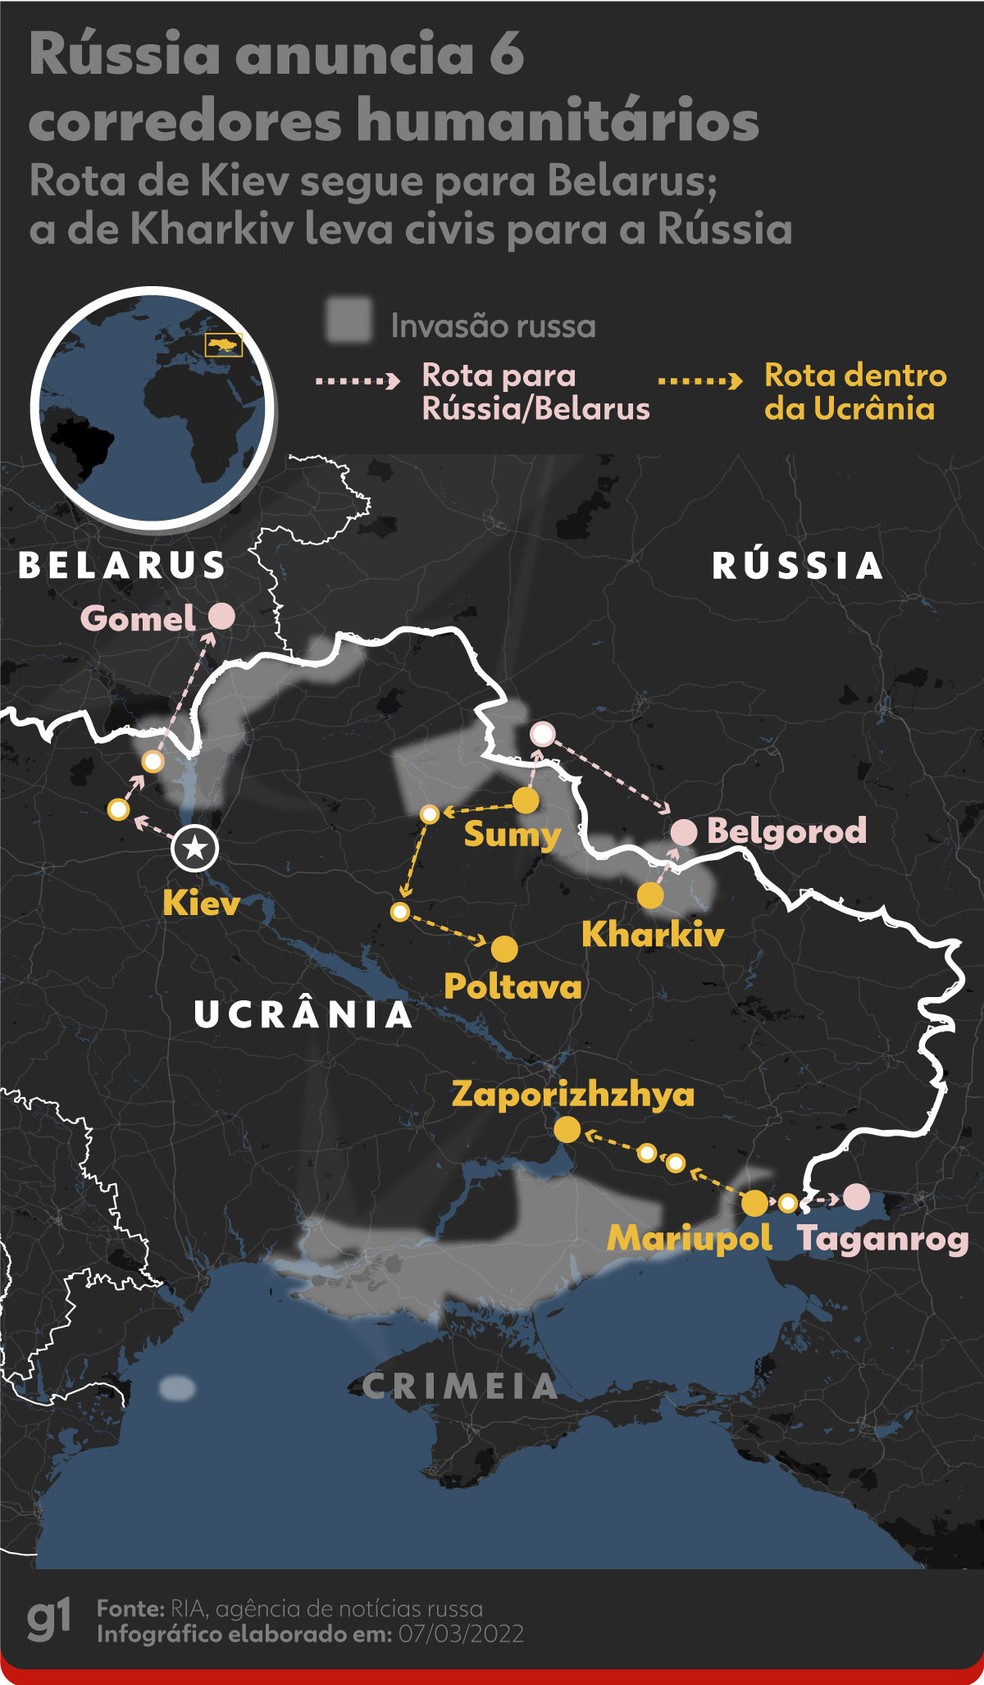 Ucrânia: Uma guerra a leste e a pergunta que os russos não podem fazer